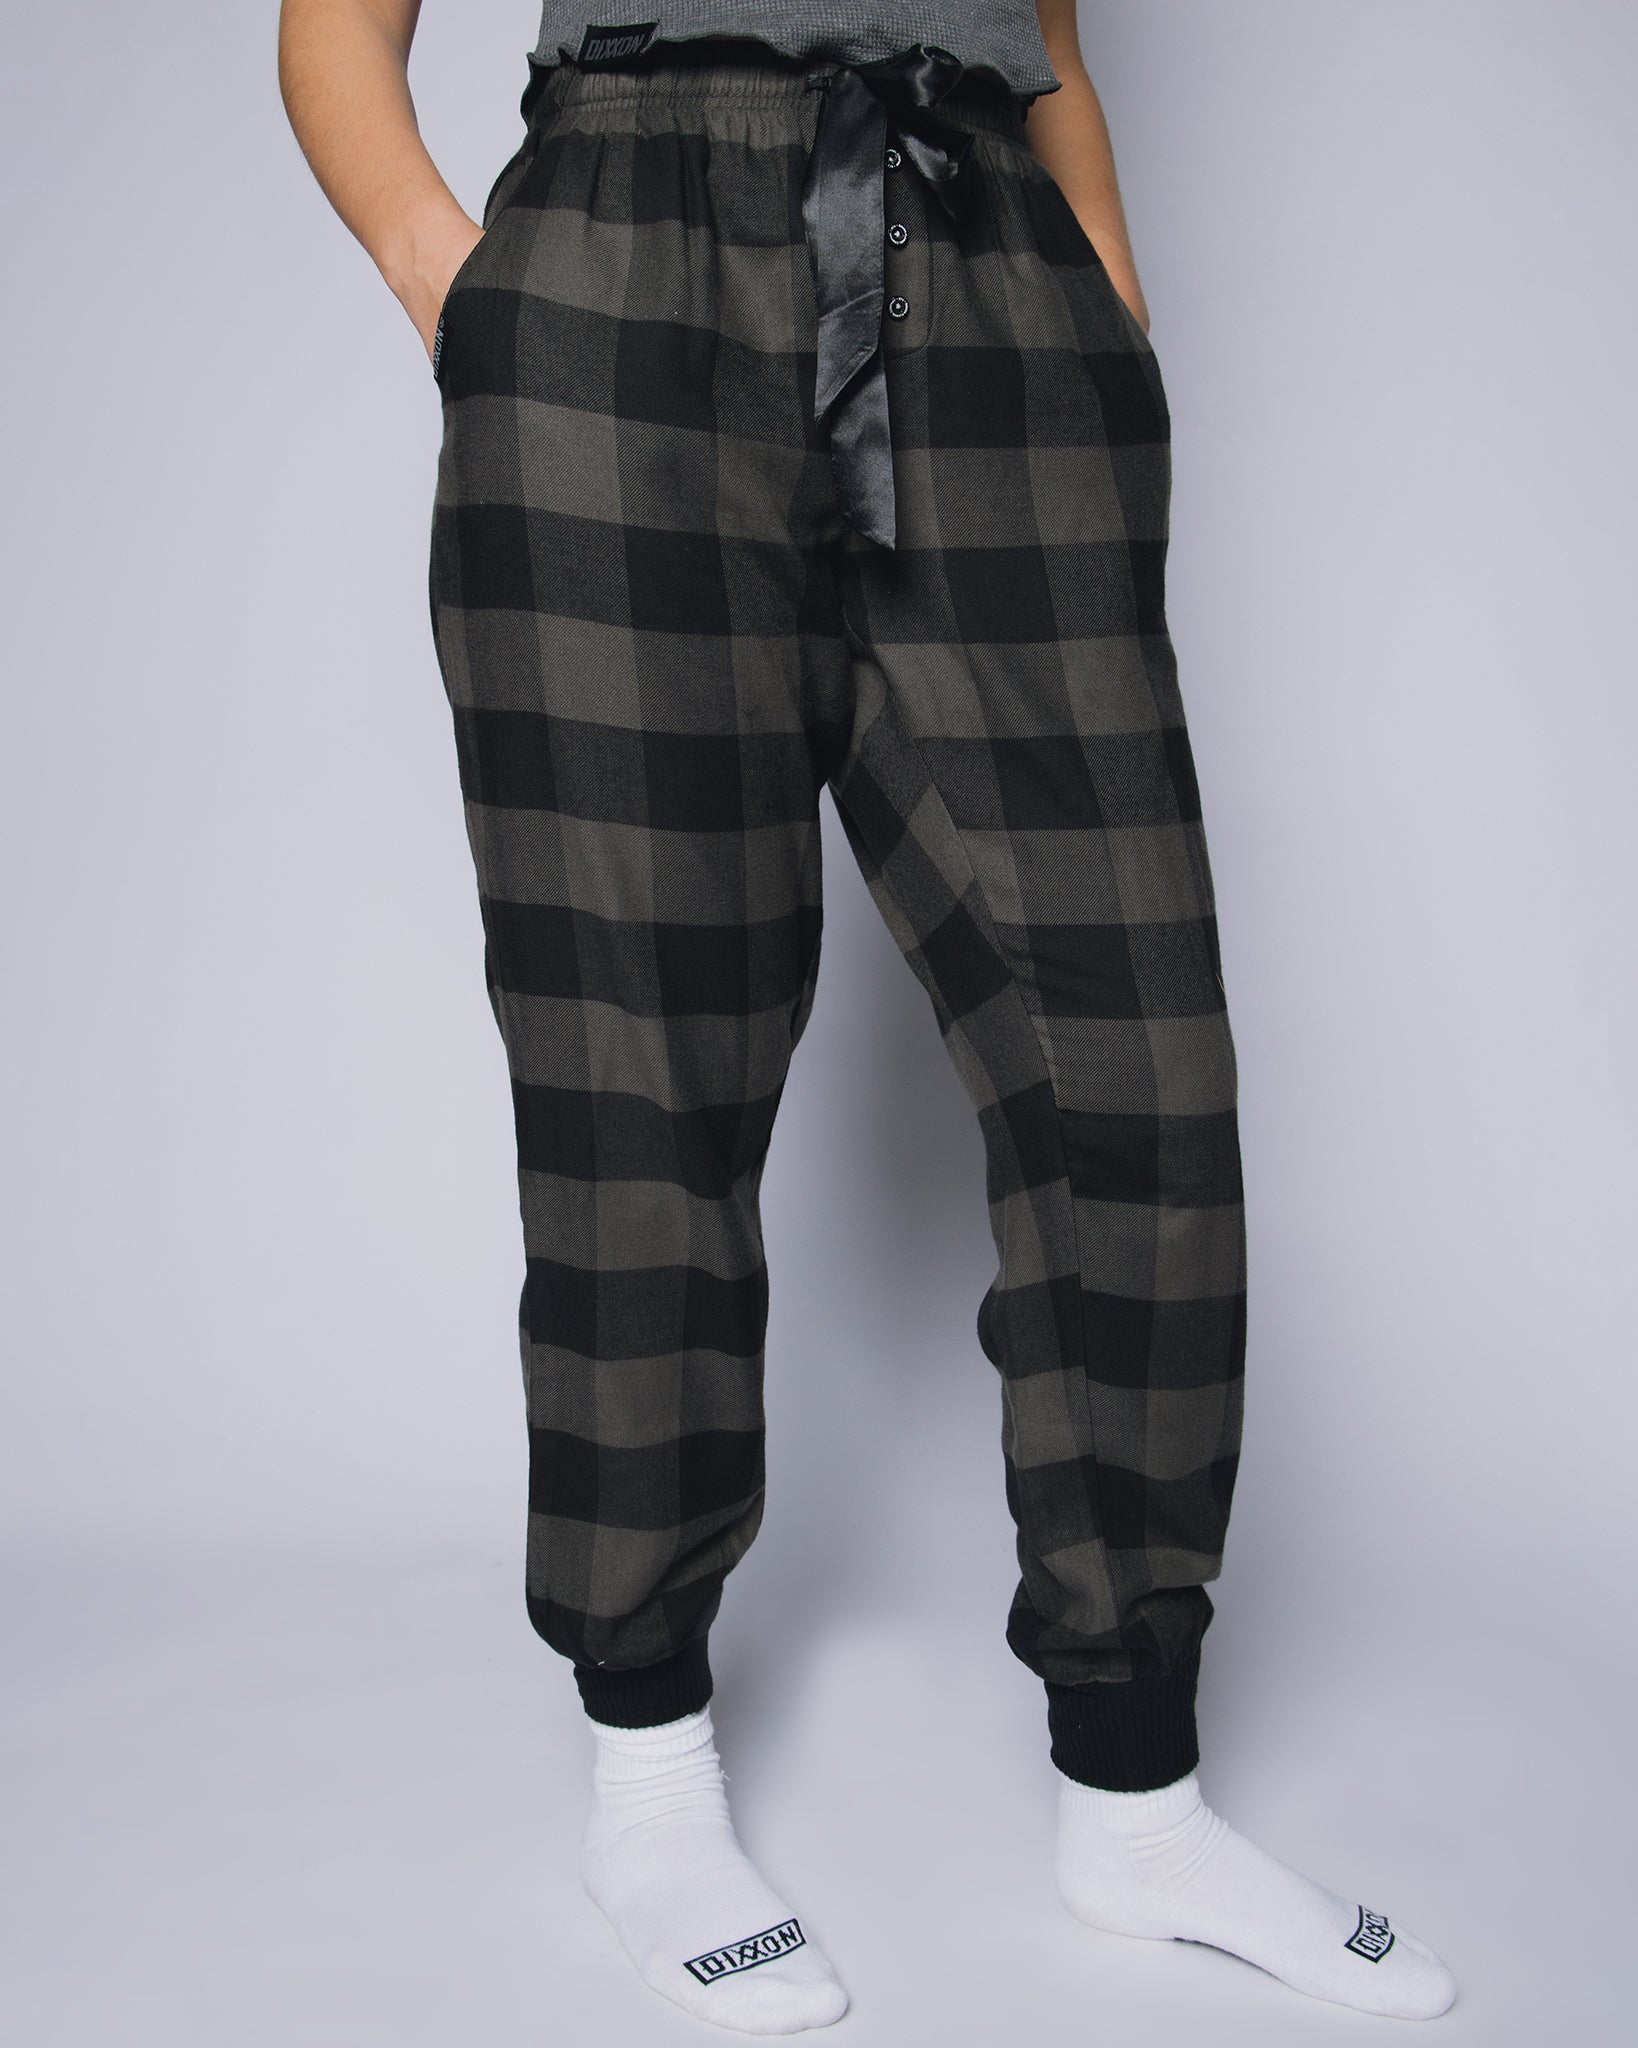 Spring Check Pants, Nightwear & Pajamas | FatFace.com